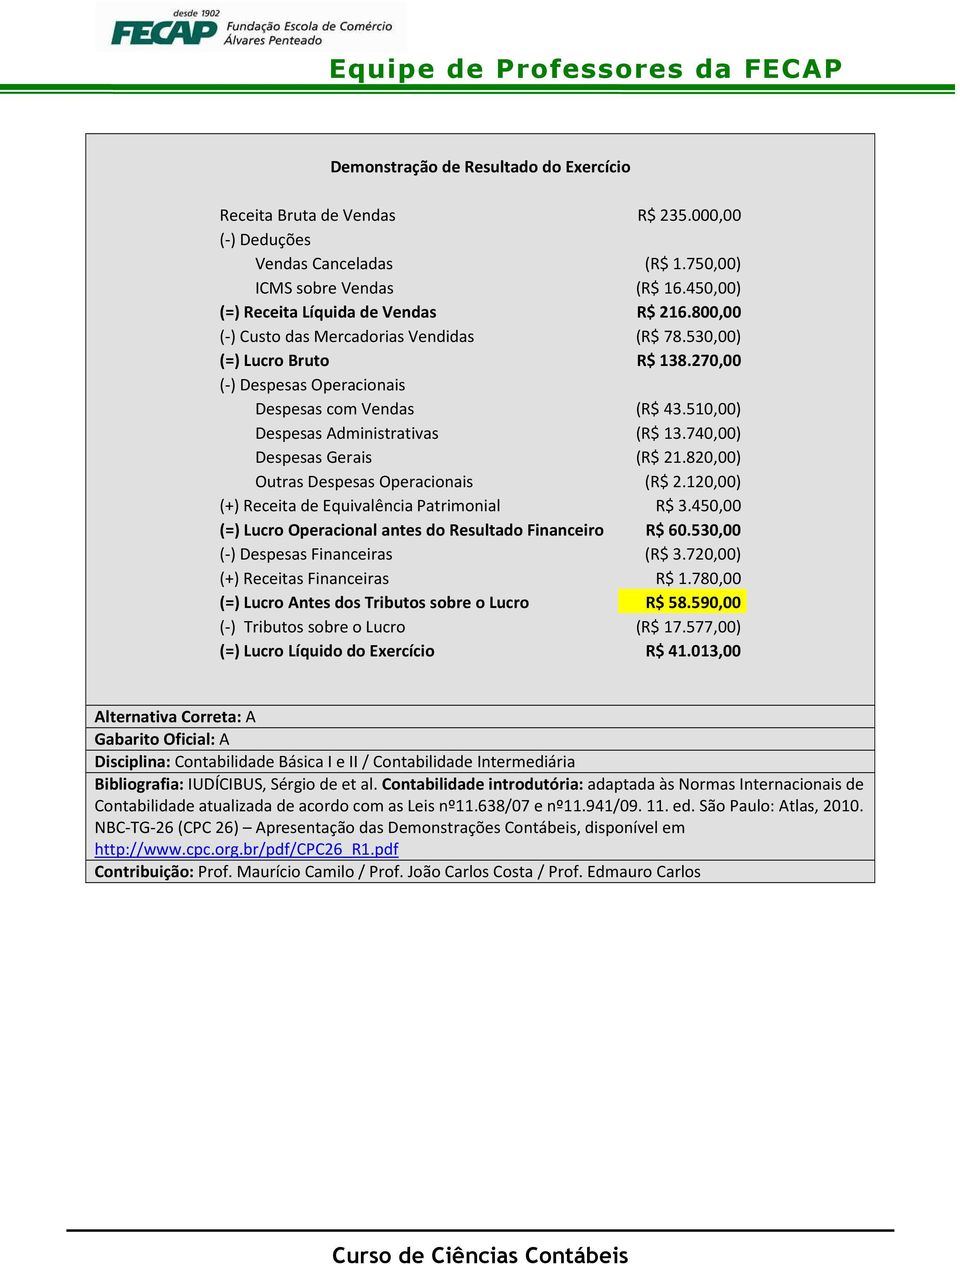 740,00) Despesas Gerais (R$ 21.820,00) Outras Despesas Operacionais (R$ 2.120,00) (+) Receita de Equivalência Patrimonial R$ 3.450,00 (=) Lucro Operacional antes do Resultado Financeiro R$ 60.